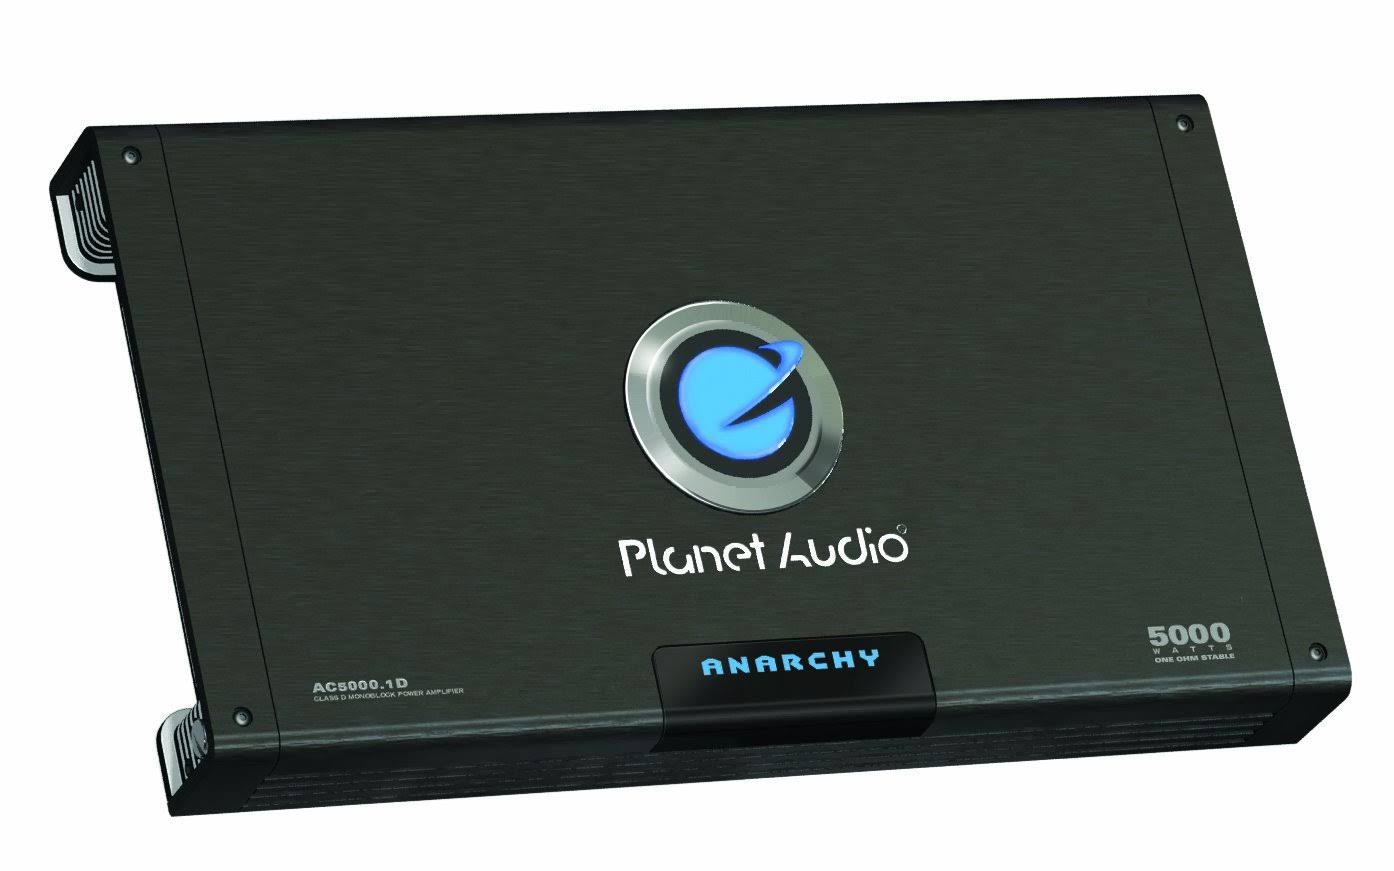 Planet Audio Ac5000.1d Anarchy Class D Mono Amplifier - 5000W